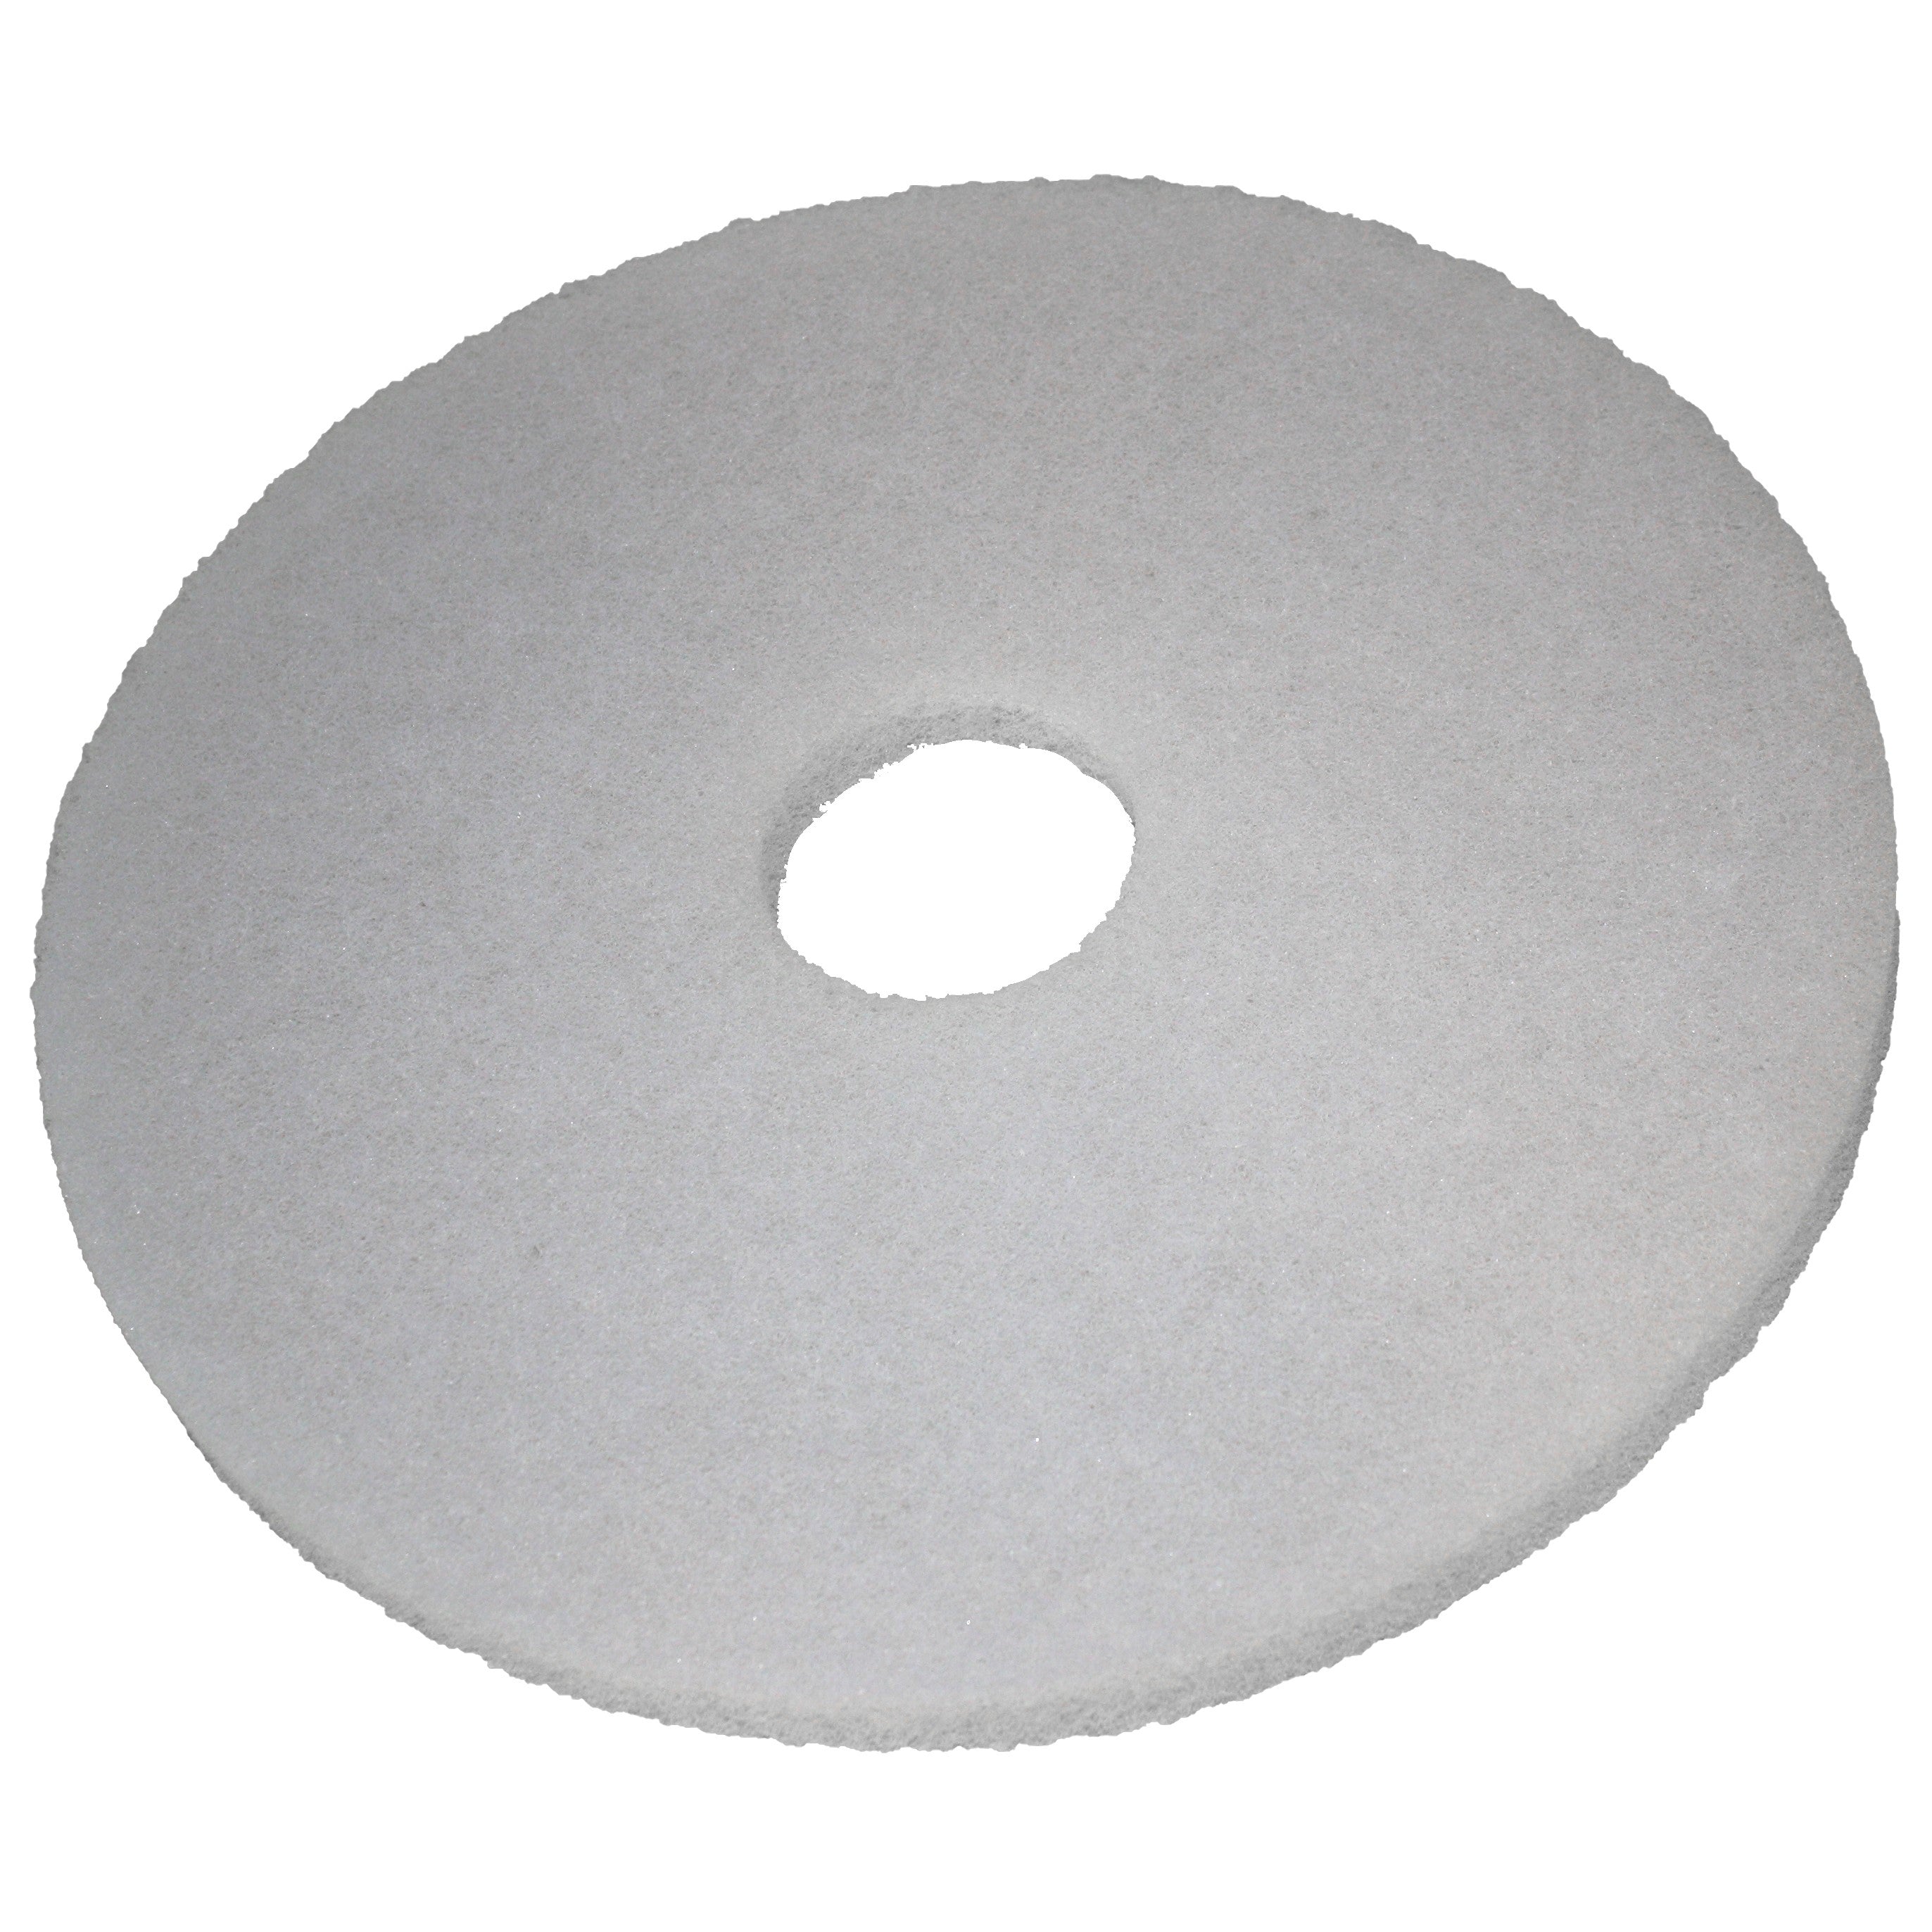 Pad blanc, Ø 532 mm, polyester